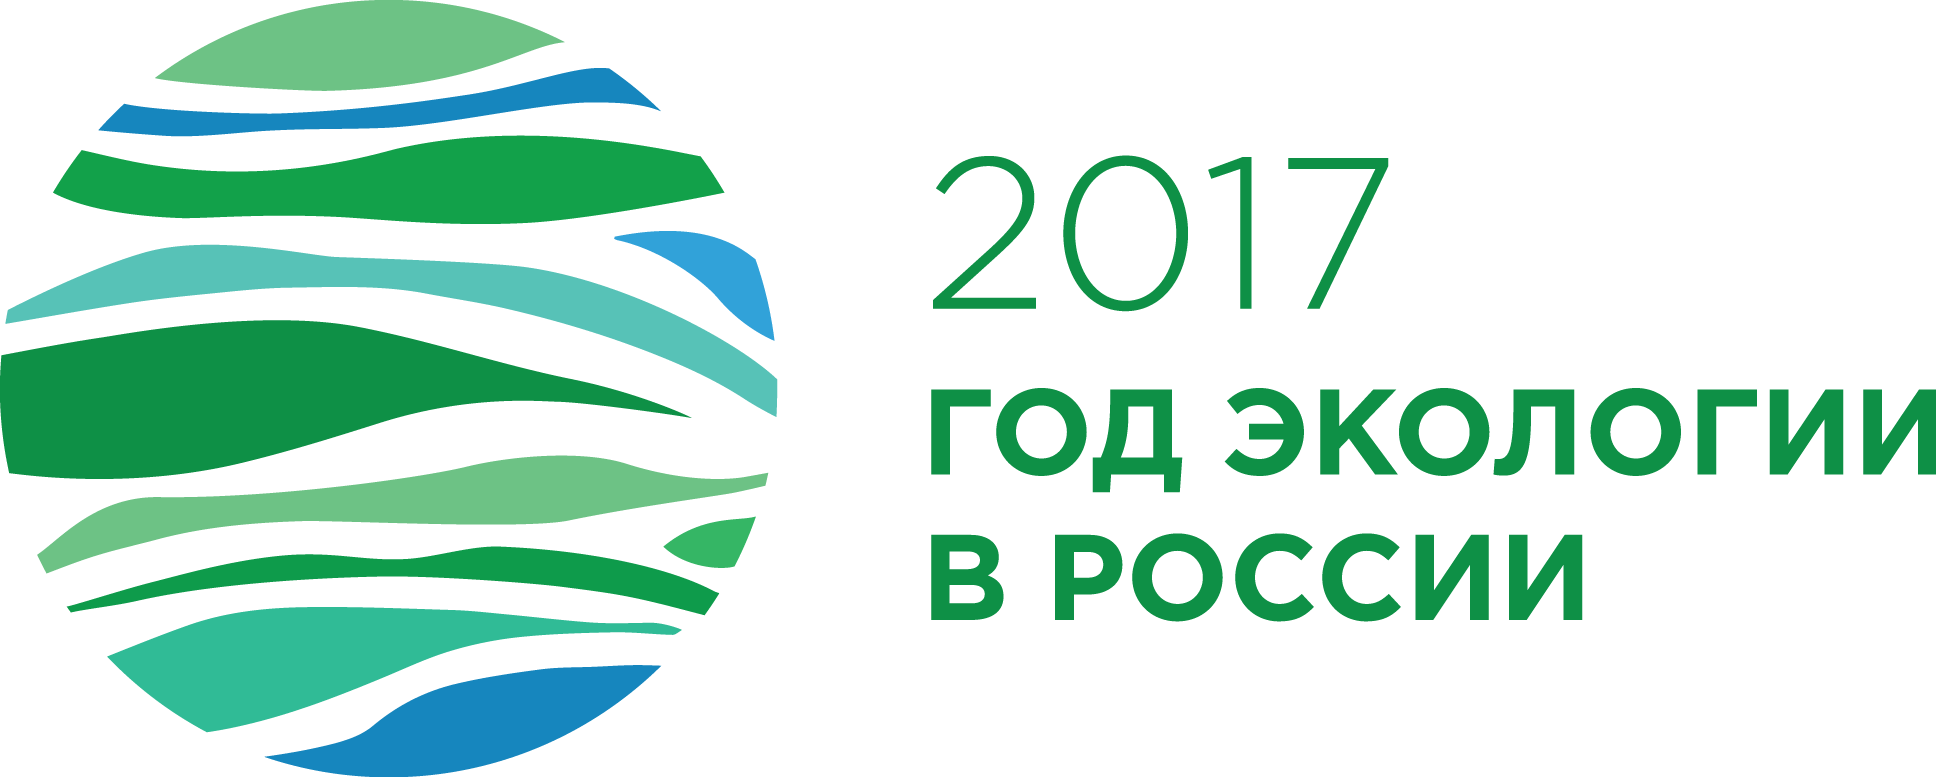 Экология 2017 г. Год экологии. Эмблема года экологии. Год экологии в России 2017 логотип. Экология России лого.